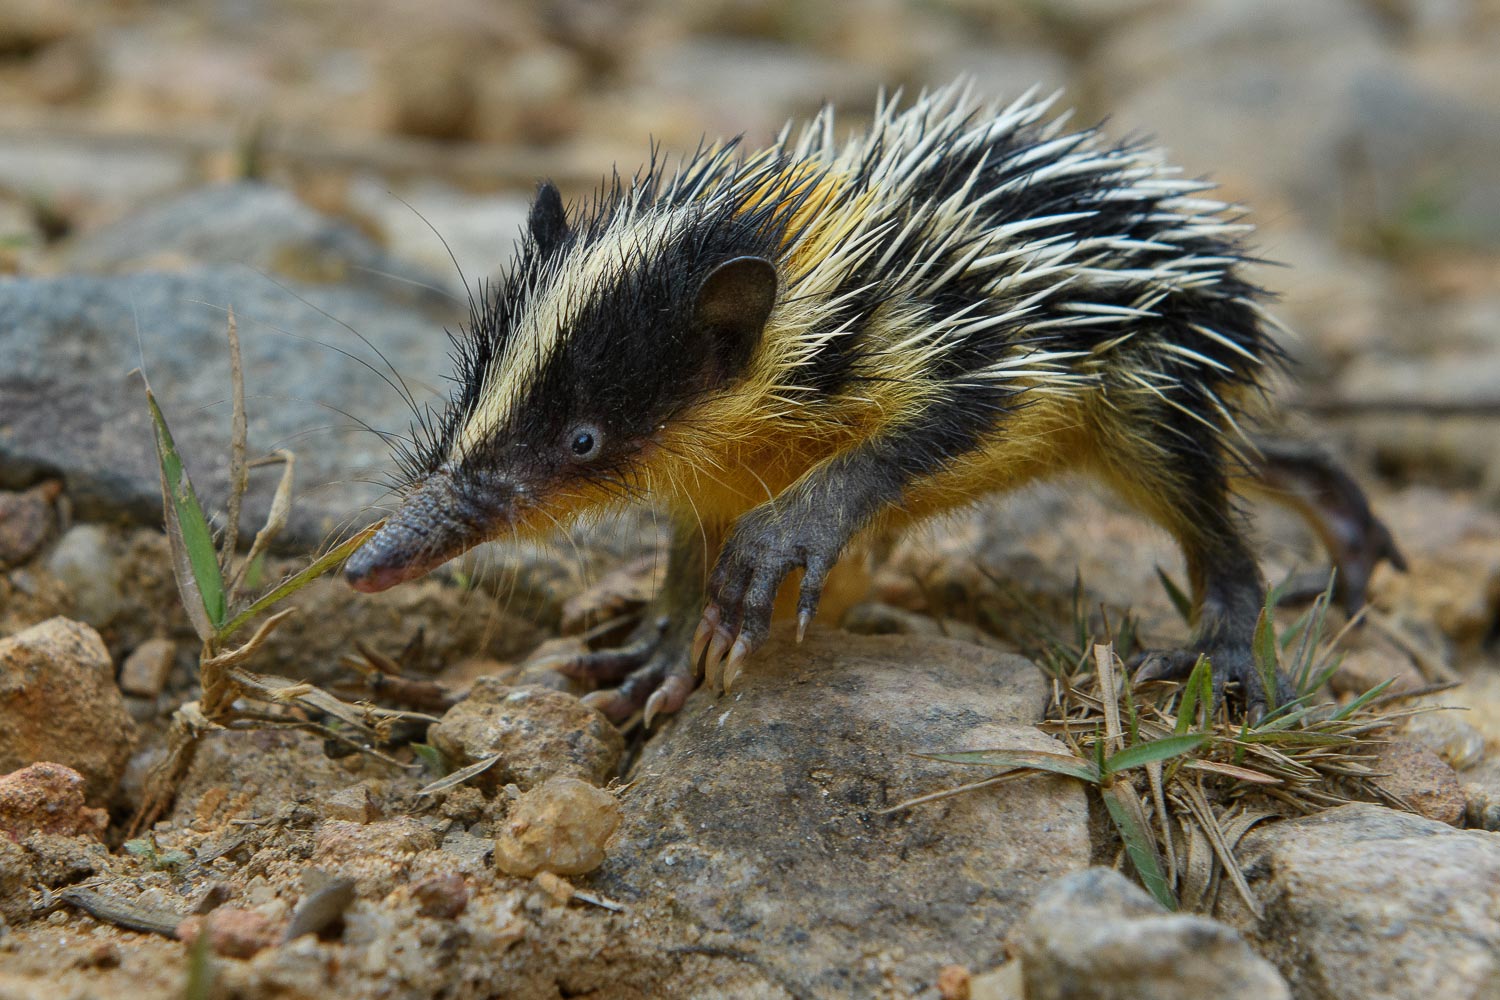 تنرک رگه دار دشتی (Hemicentetes semispinosus). این یک گونه از تنرک است، یک گروه متنوع و منحصر به فرد از پستانداران که فقط در ماداگاسکار یافت می شوند